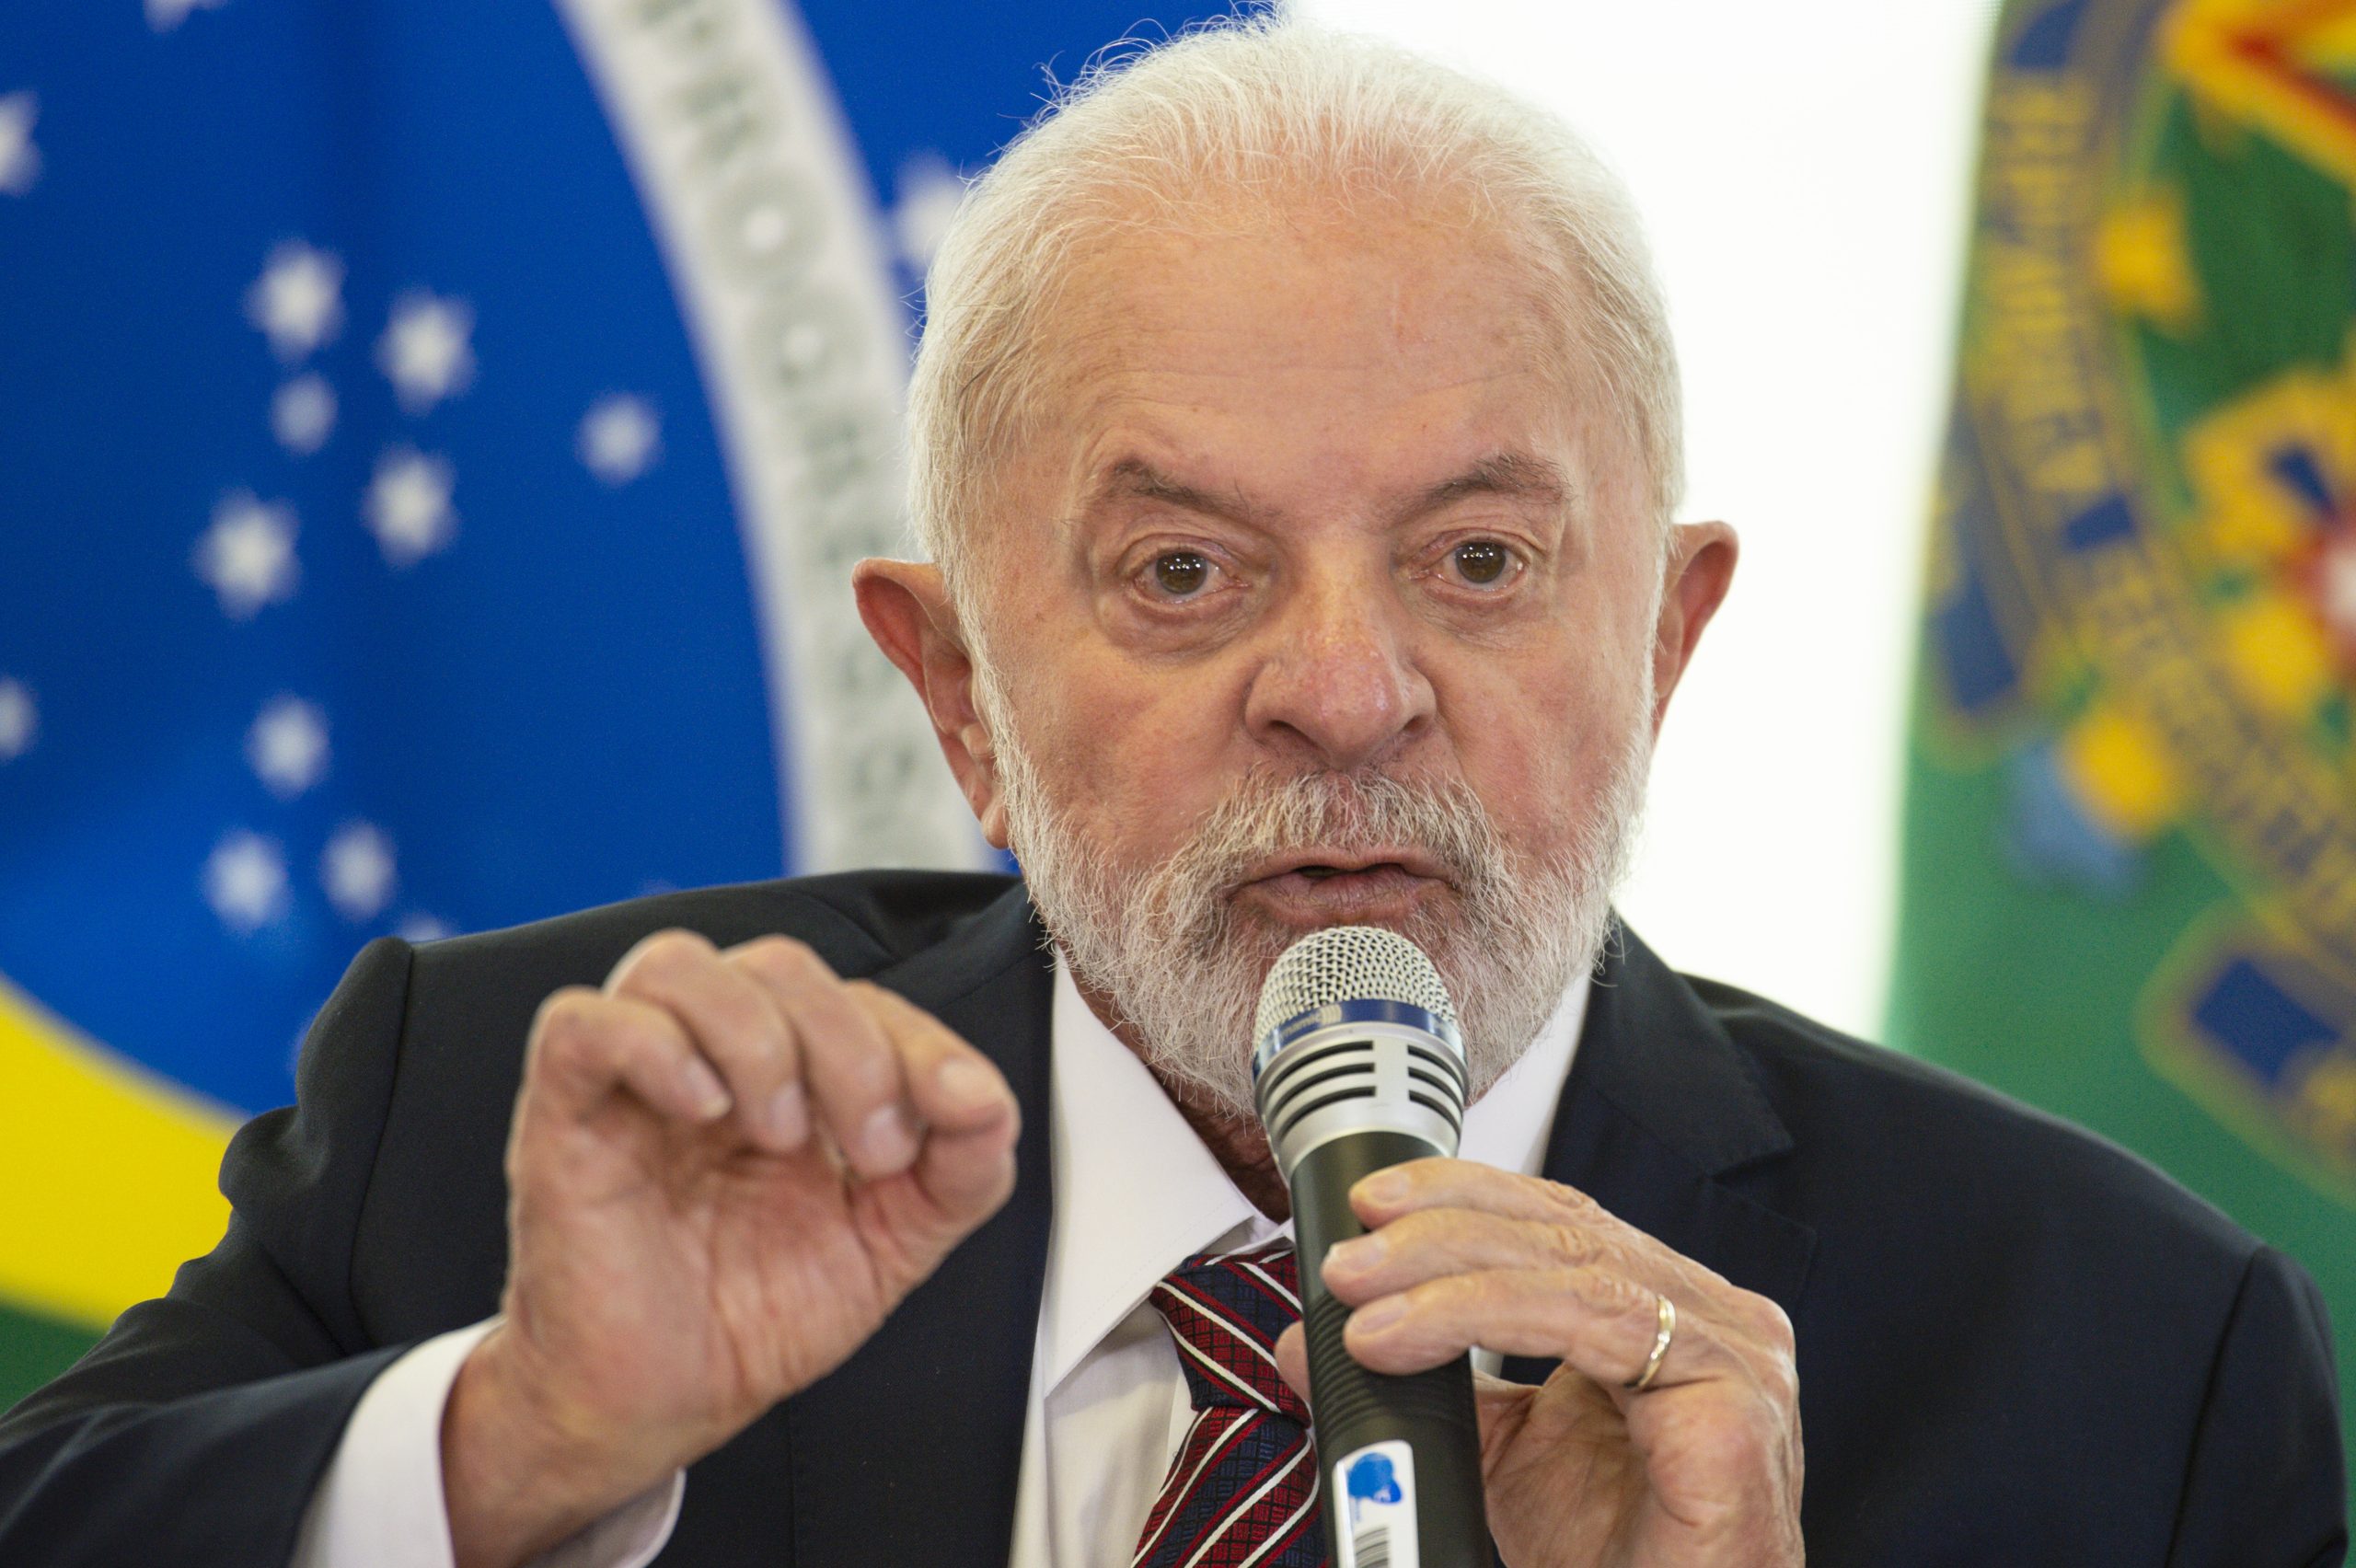 Embaixada de Israel afirma que Lula ignora definição de genocídio